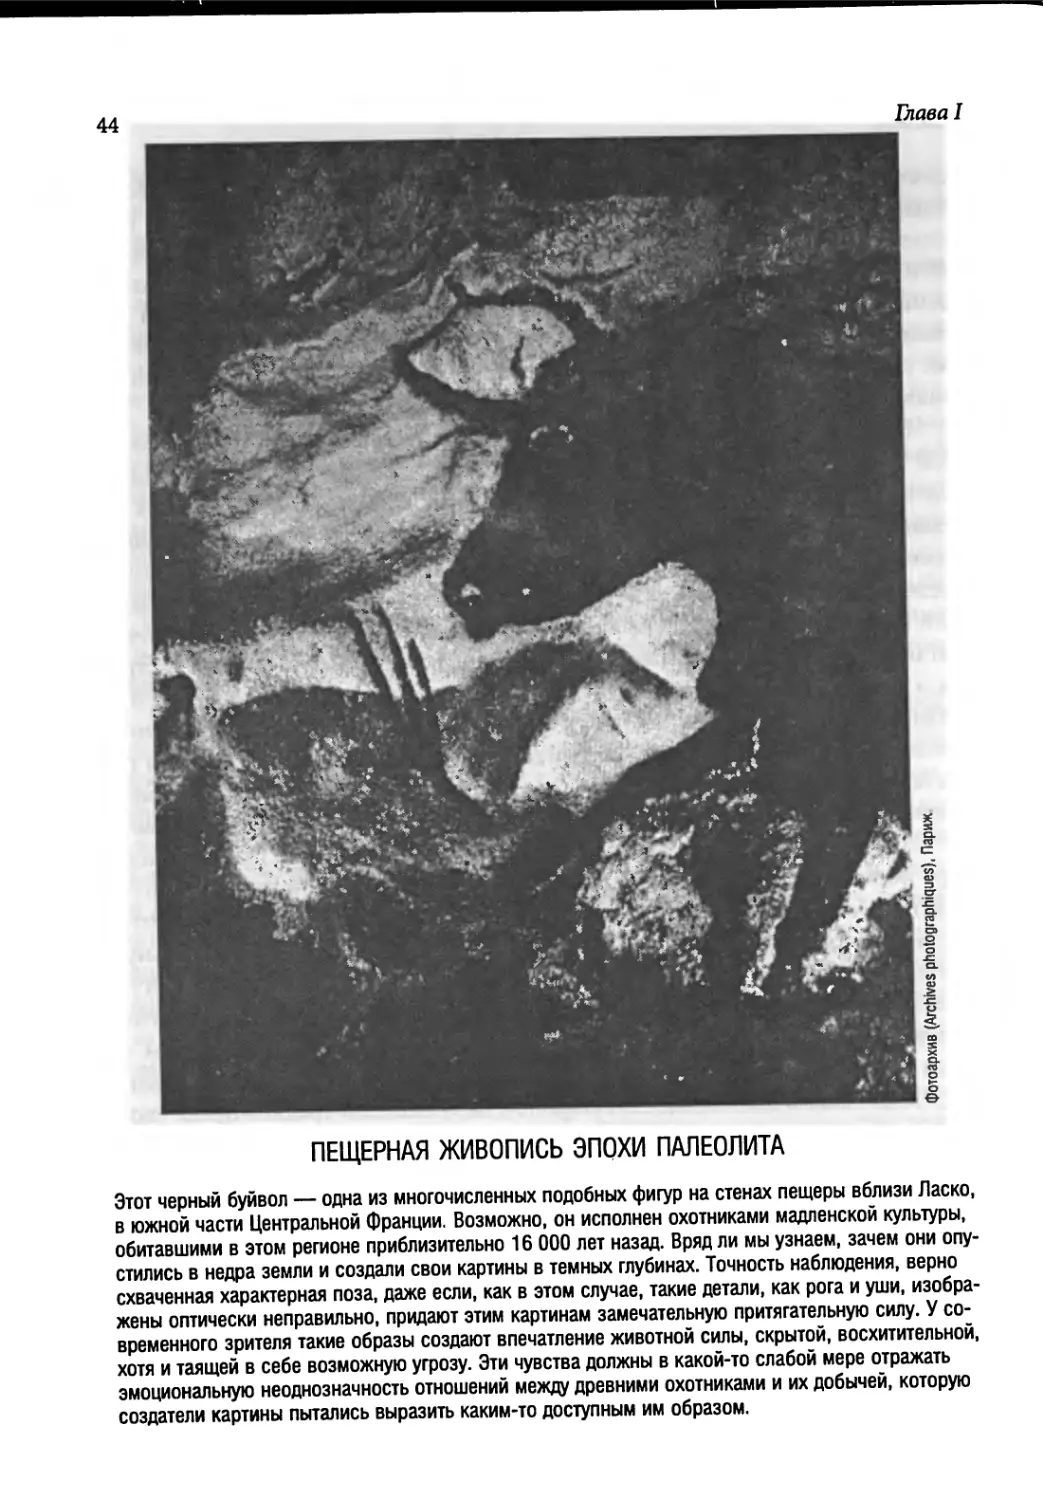 Пещерная живопись эпохи палеолита [44]